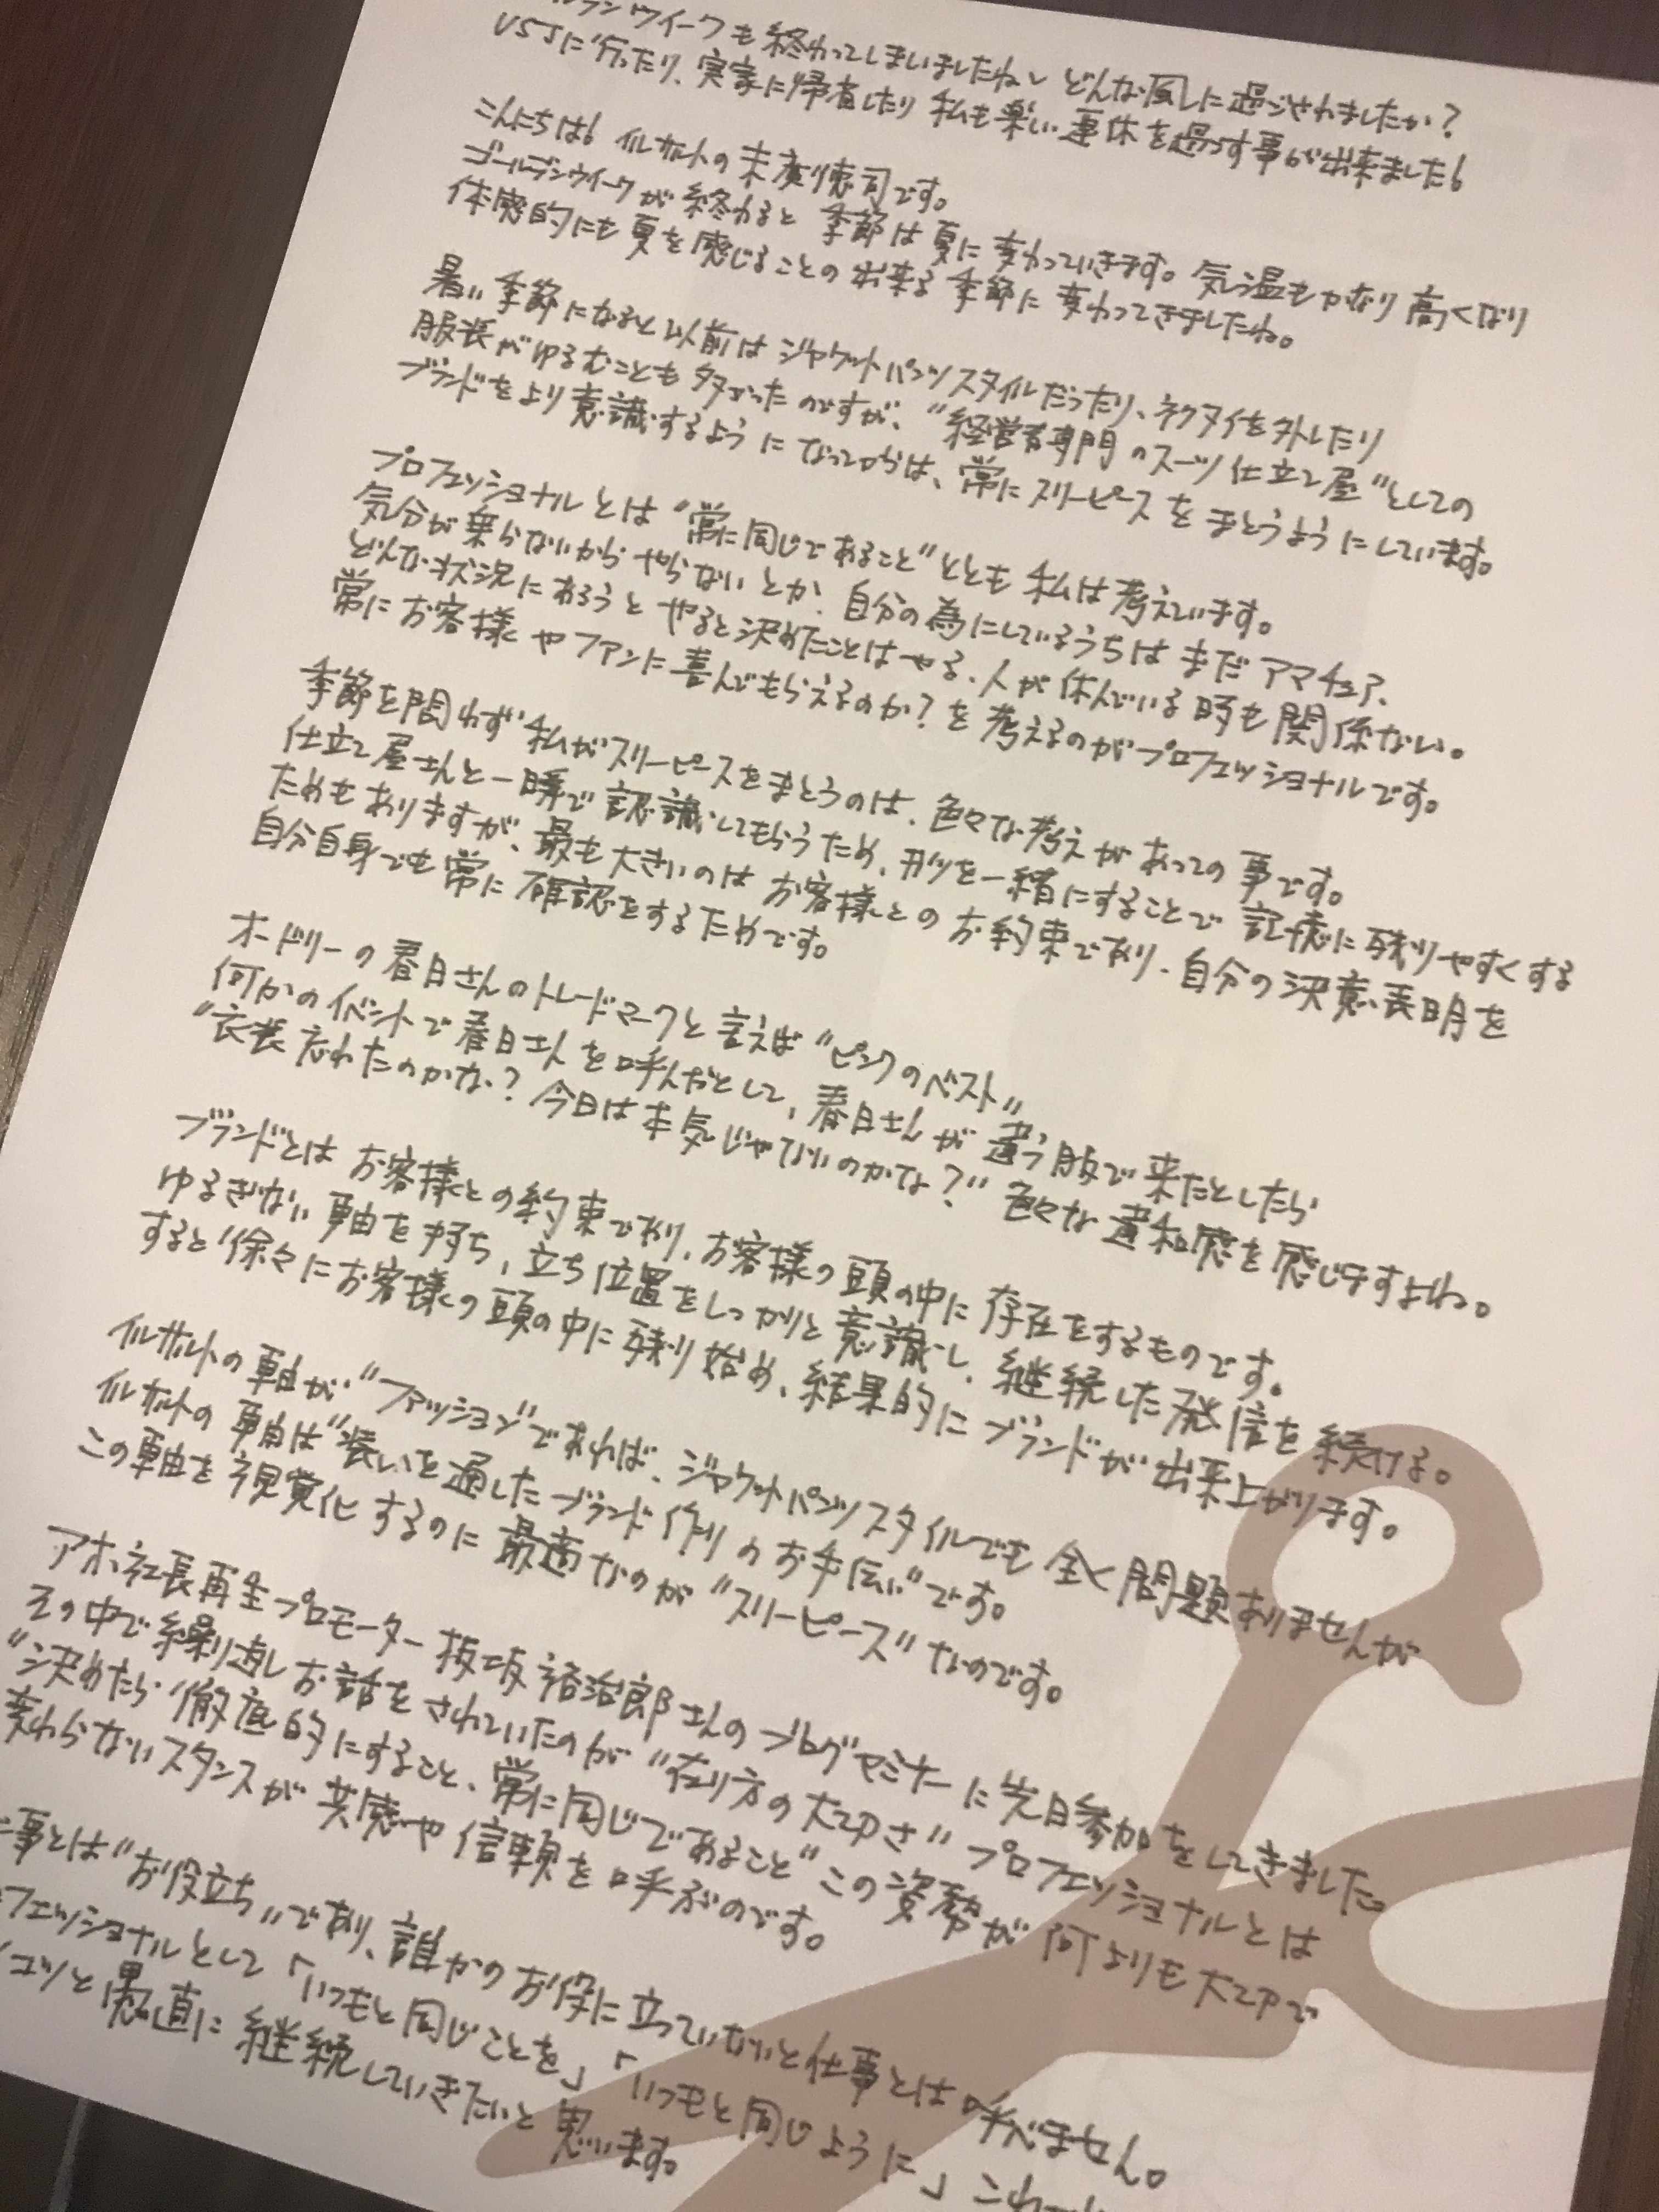 品と教養の滲み出る中谷美紀さんのお手紙 日本唯一の経営者専門スーツ仕立て屋 イルサルト